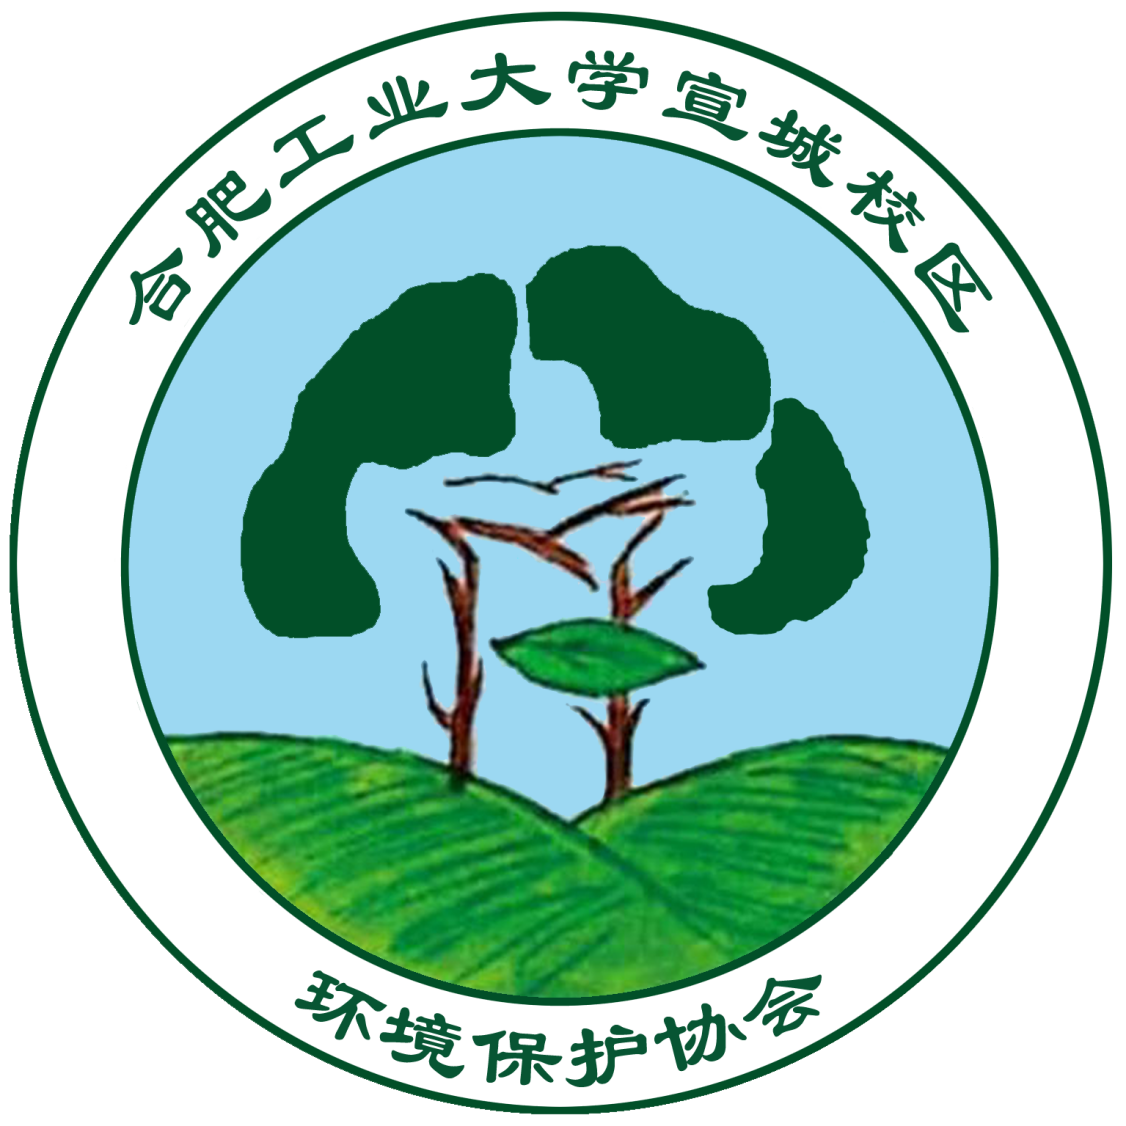 合肥工業大學宣城校區綠色生活環保協會